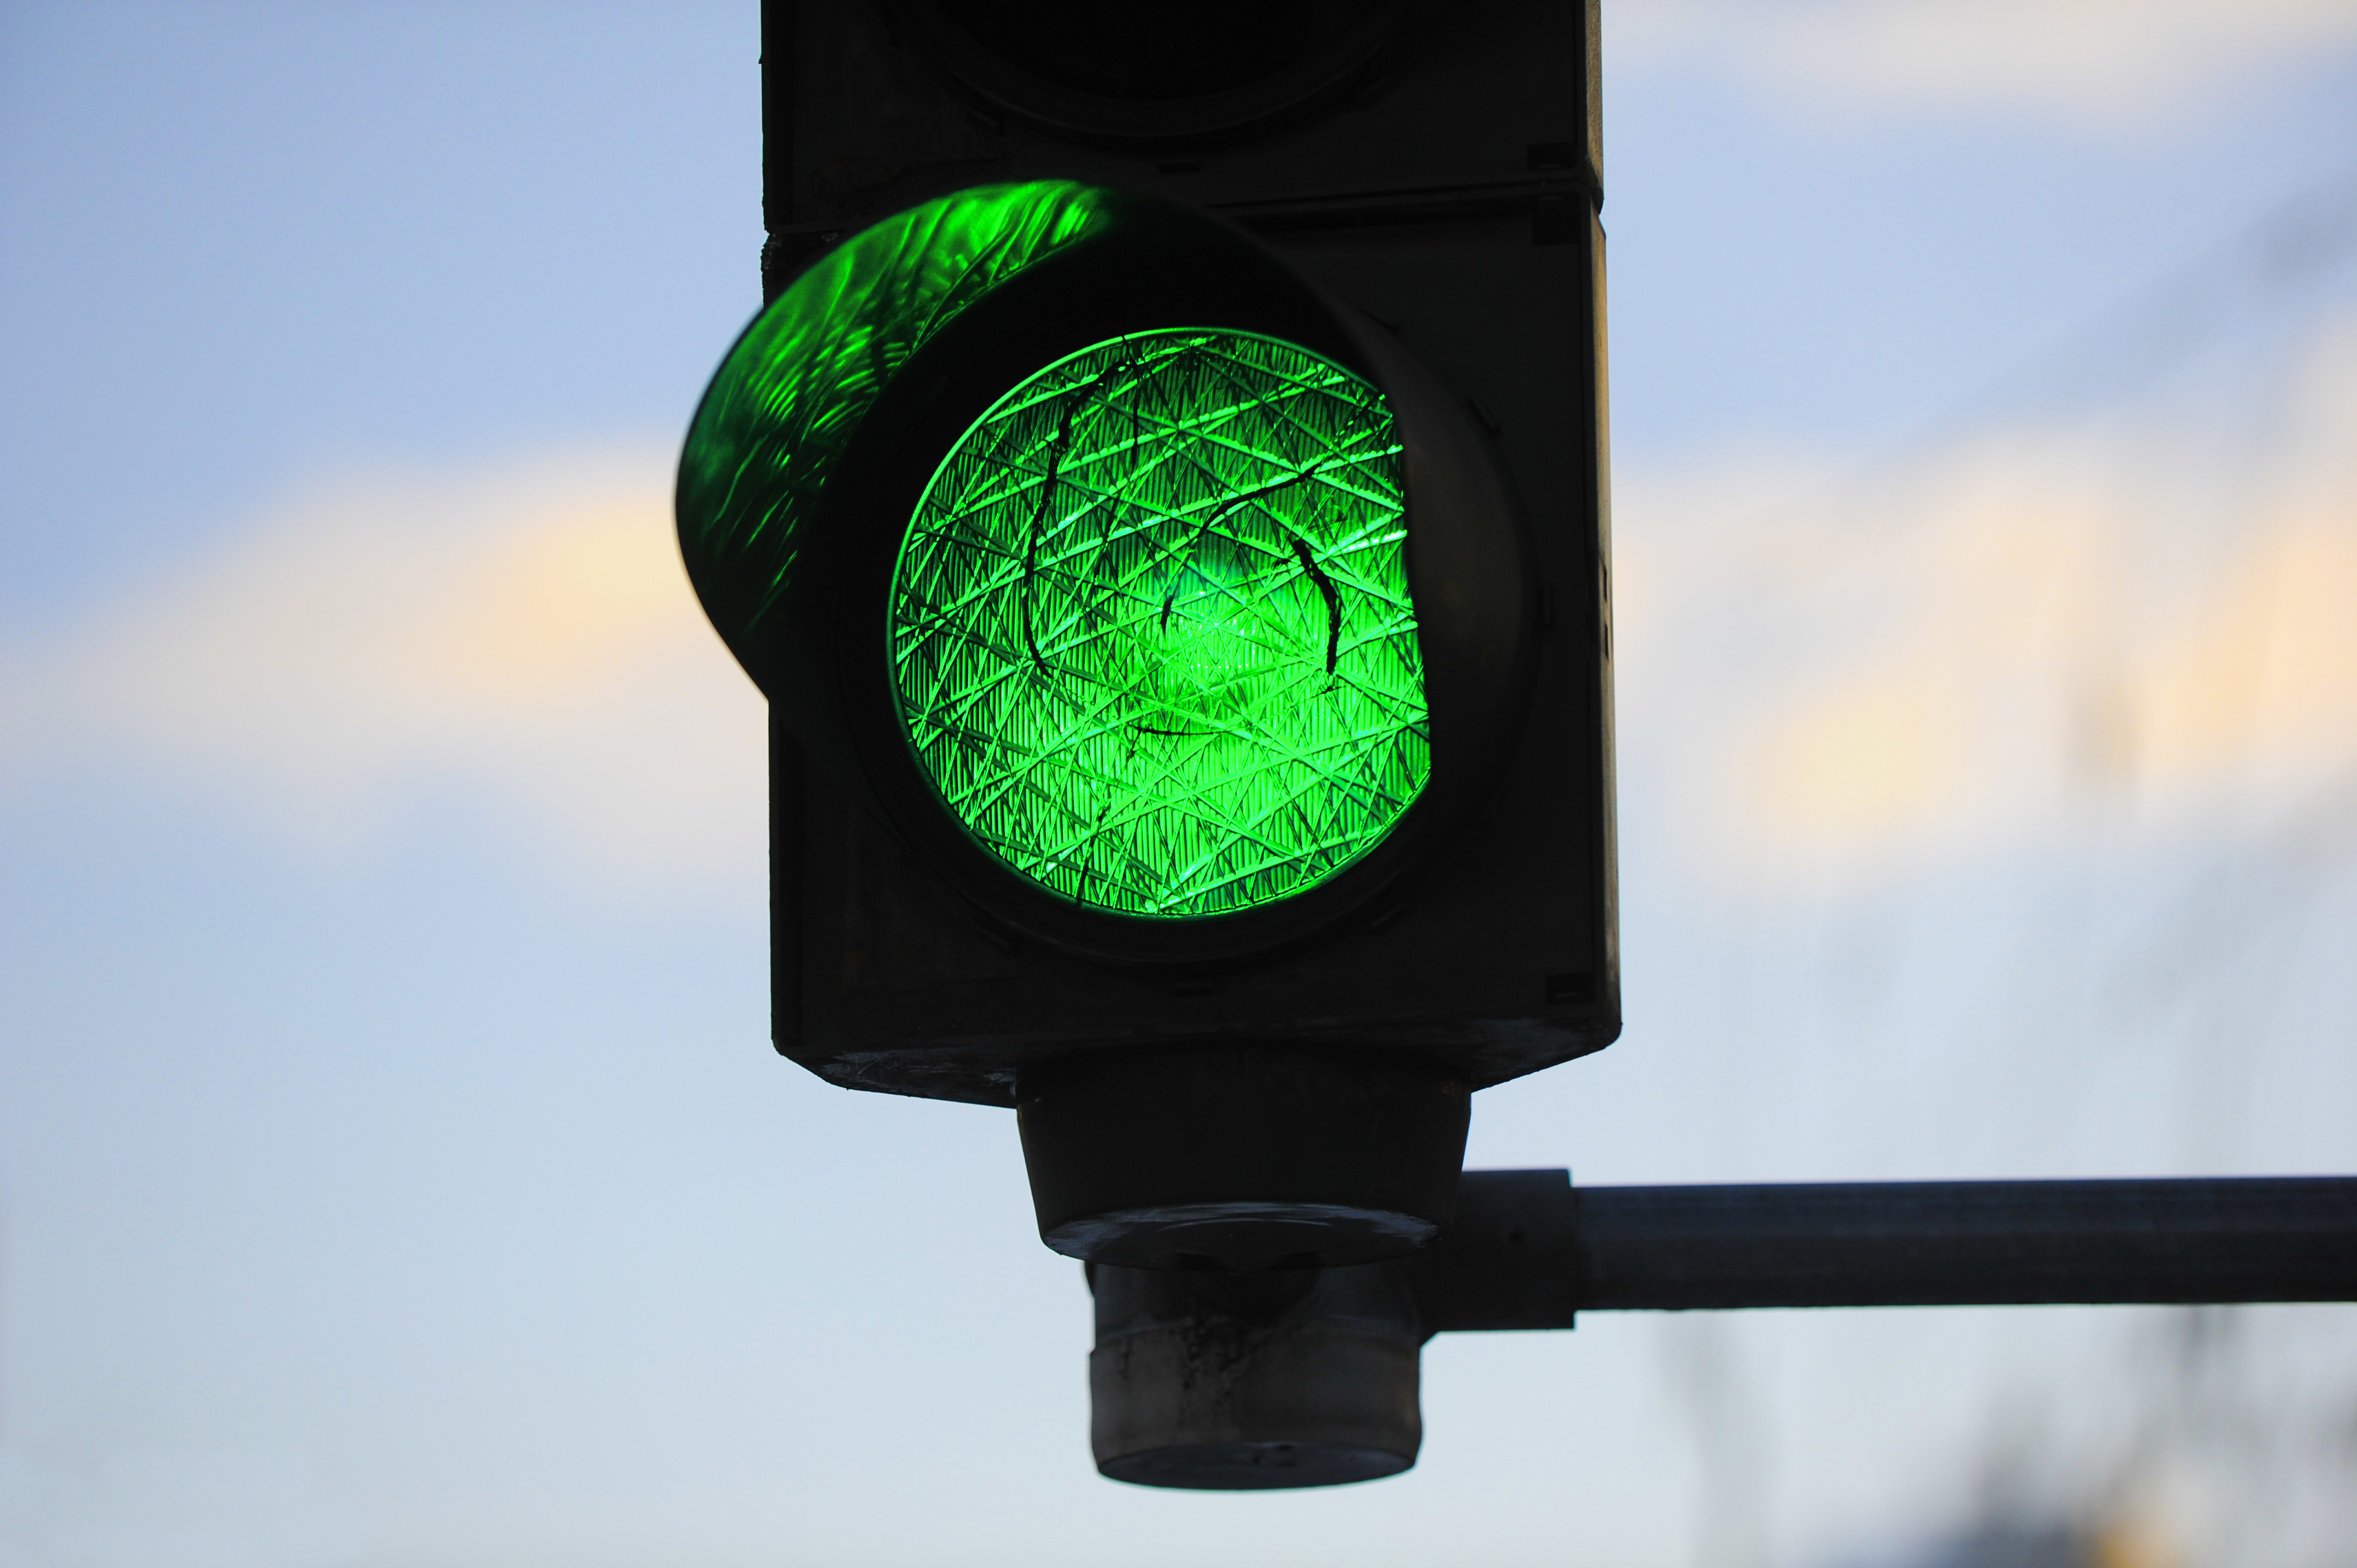 Светофоры всегда зеленые. Зеленый свет светофора. Зеленый цвет светофора. Зелйныйсвет светофора. Зеленый сигнал.